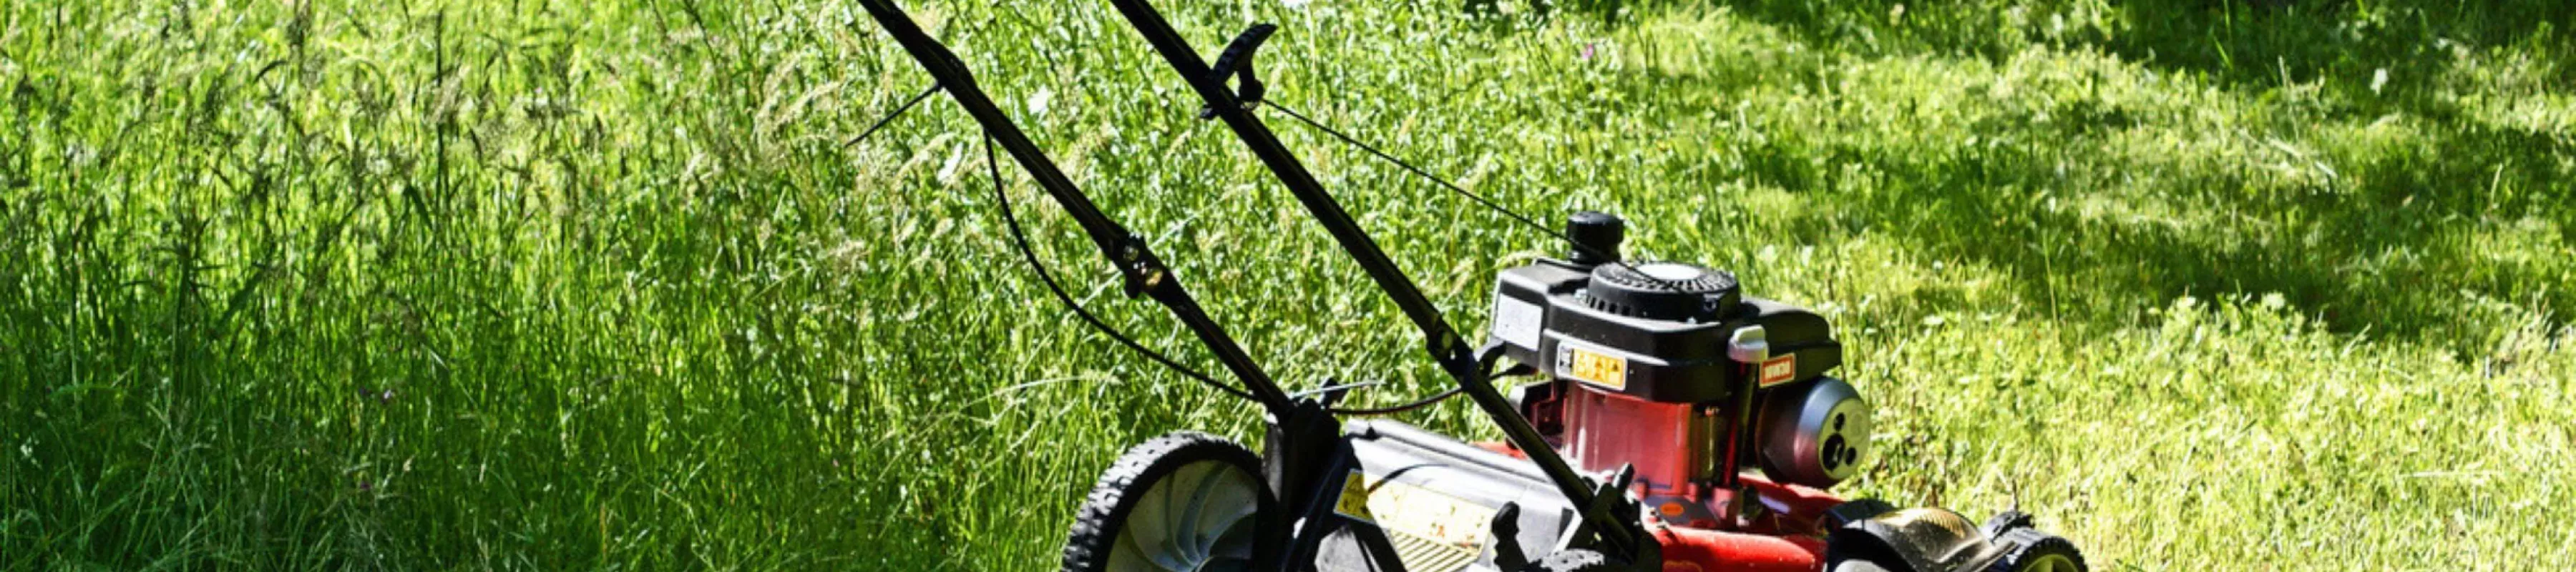 A lawnmower in long grass